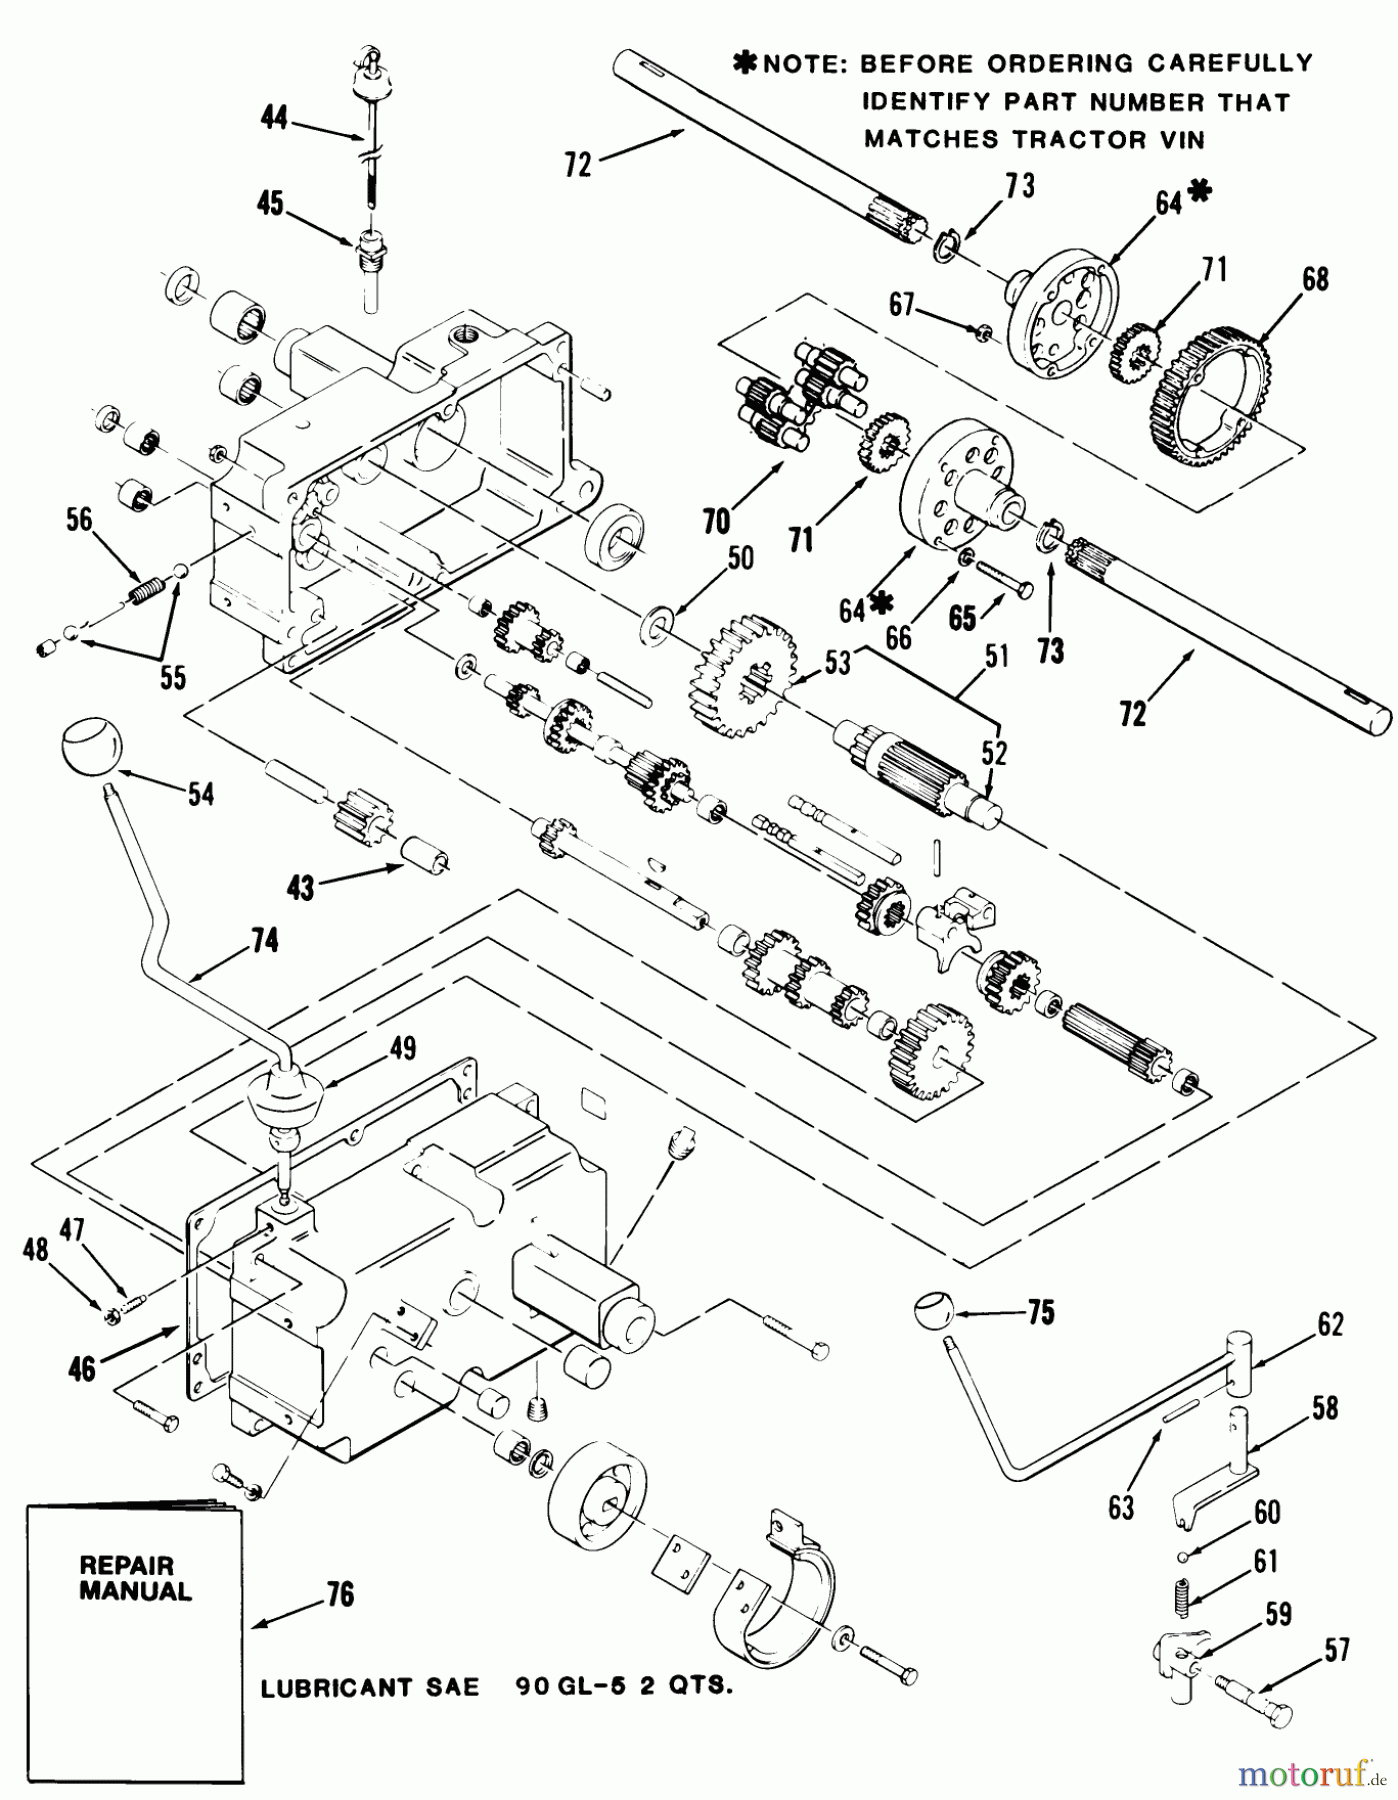  Toro Neu Mowers, Lawn & Garden Tractor Seite 1 31-14K801 (414-8) - Toro 414-8 Garden Tractor, 1986 MECHANICAL TRANSMISSION-8-SPEED #2